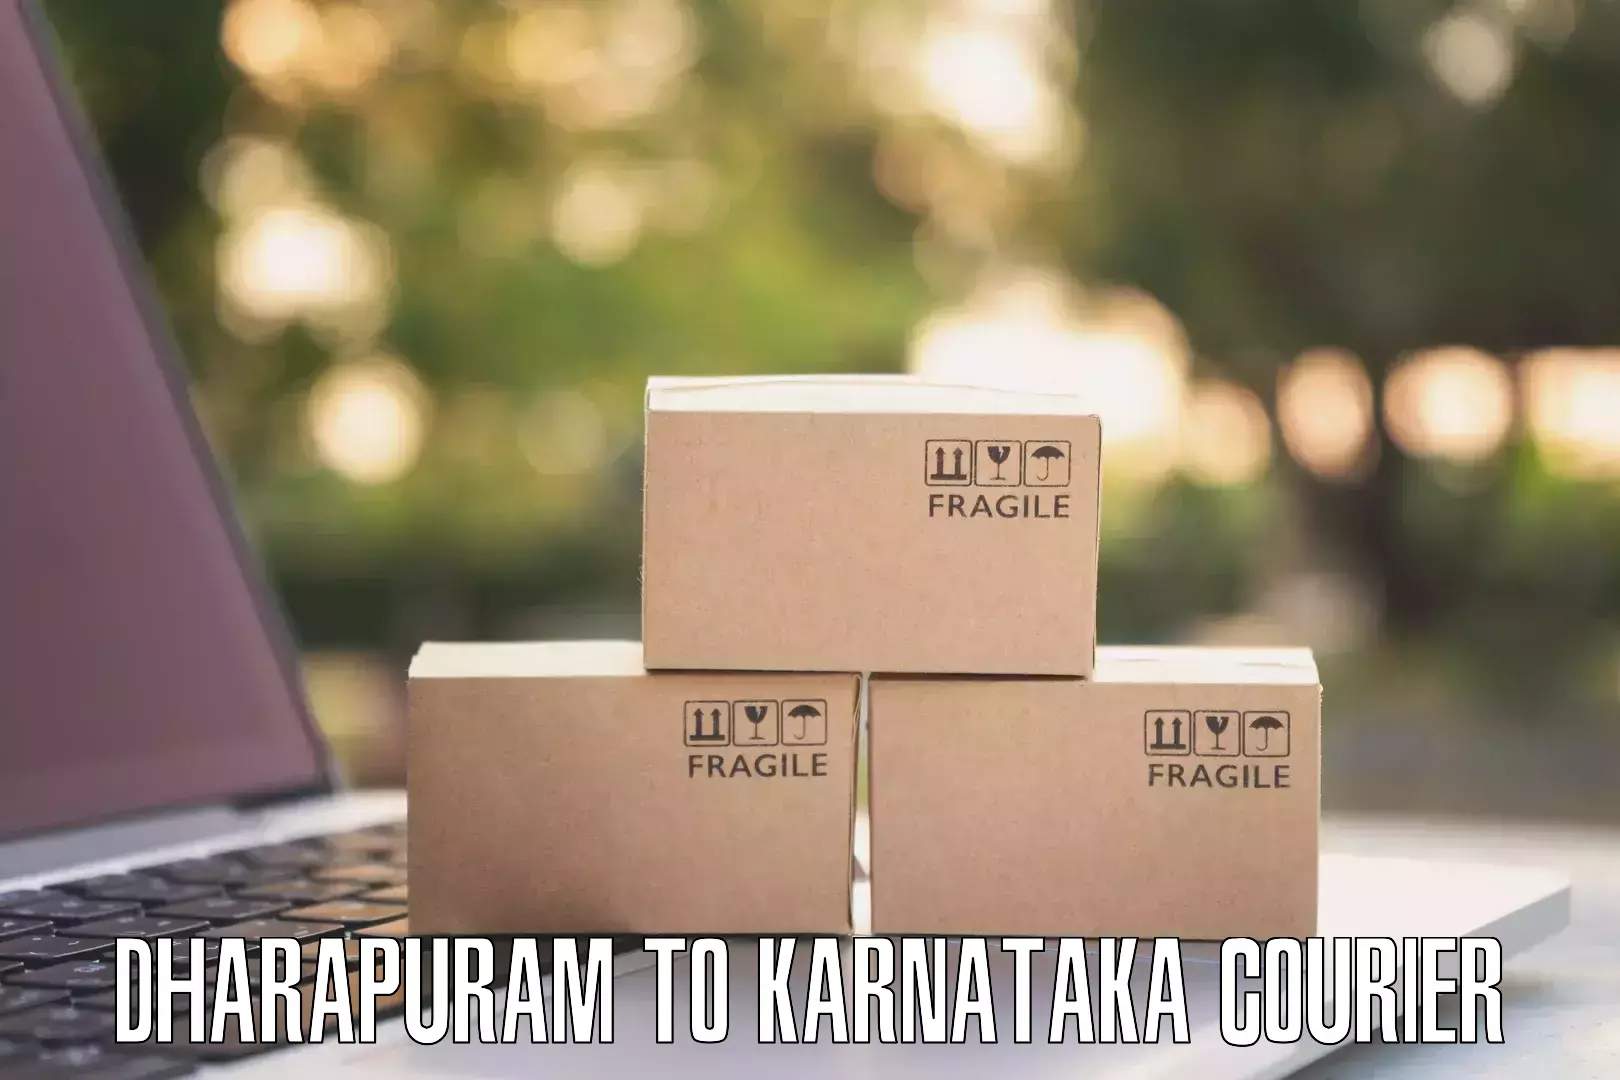 High-performance logistics Dharapuram to Chikkanayakanahalli